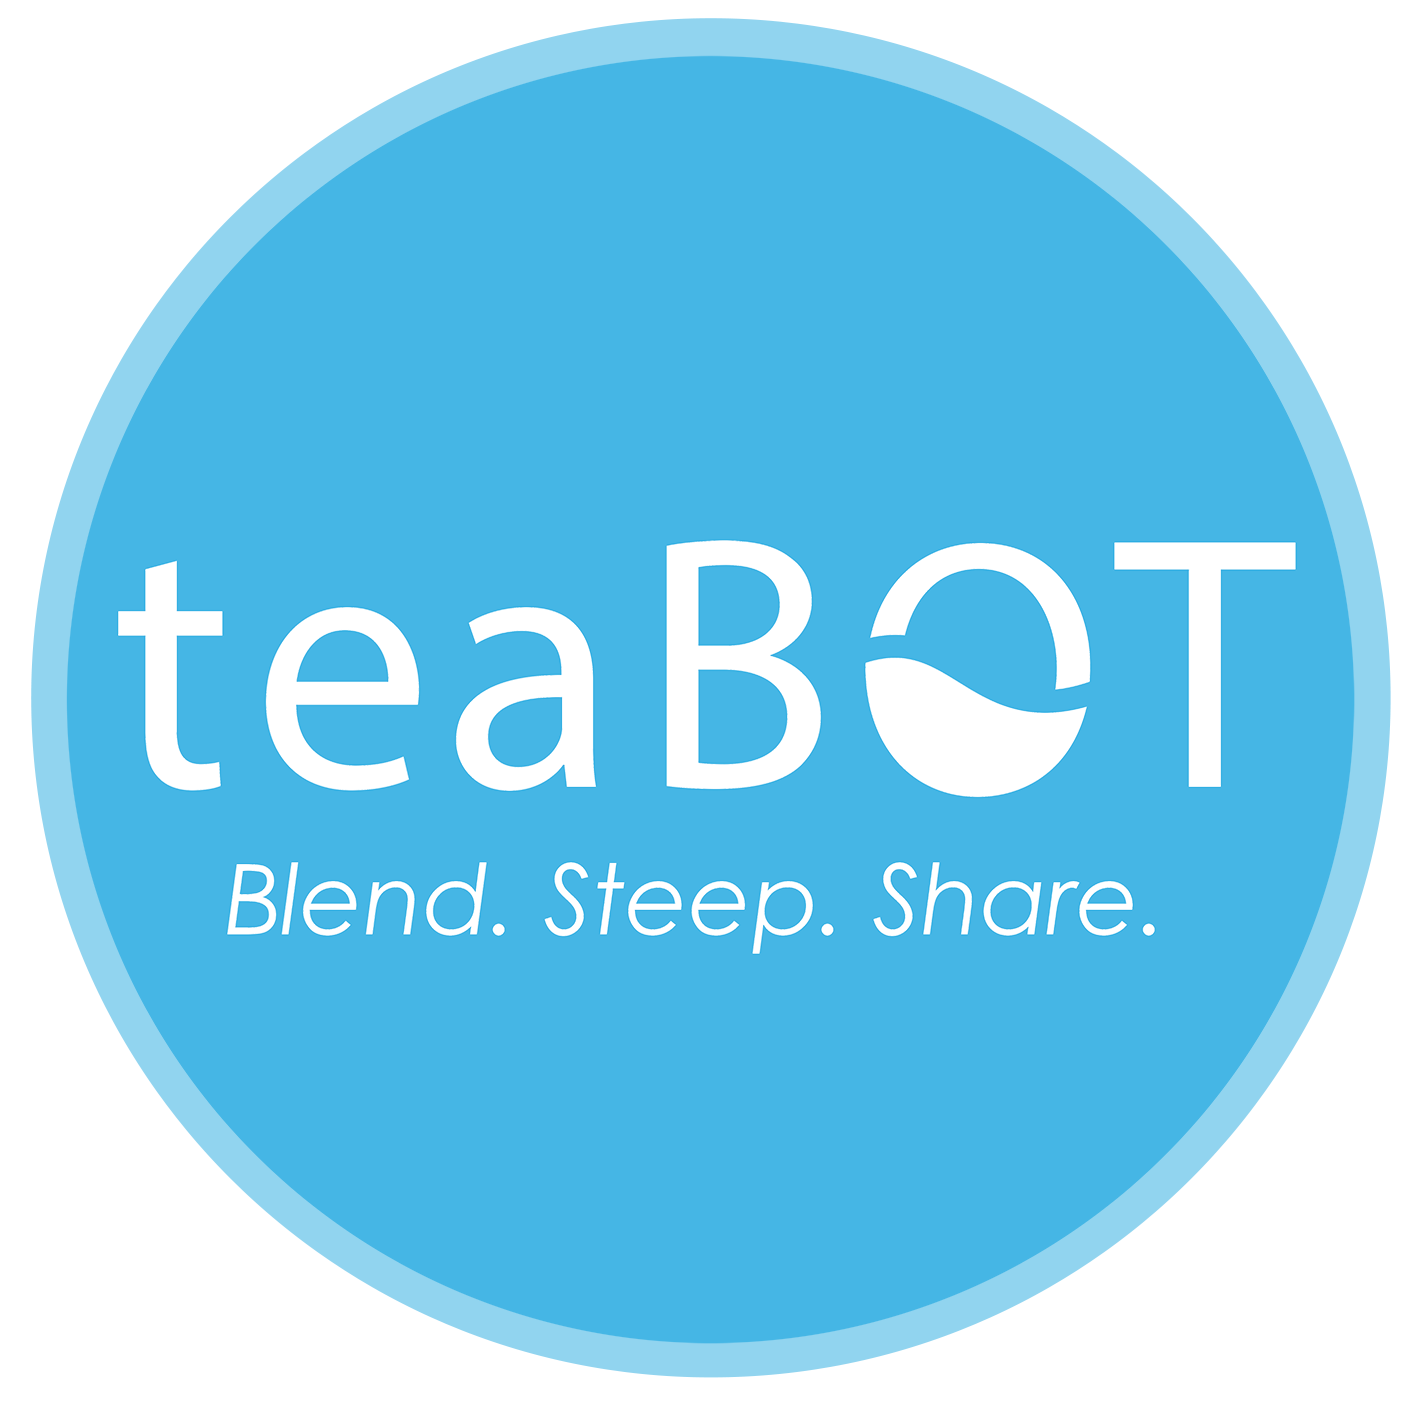 teabot